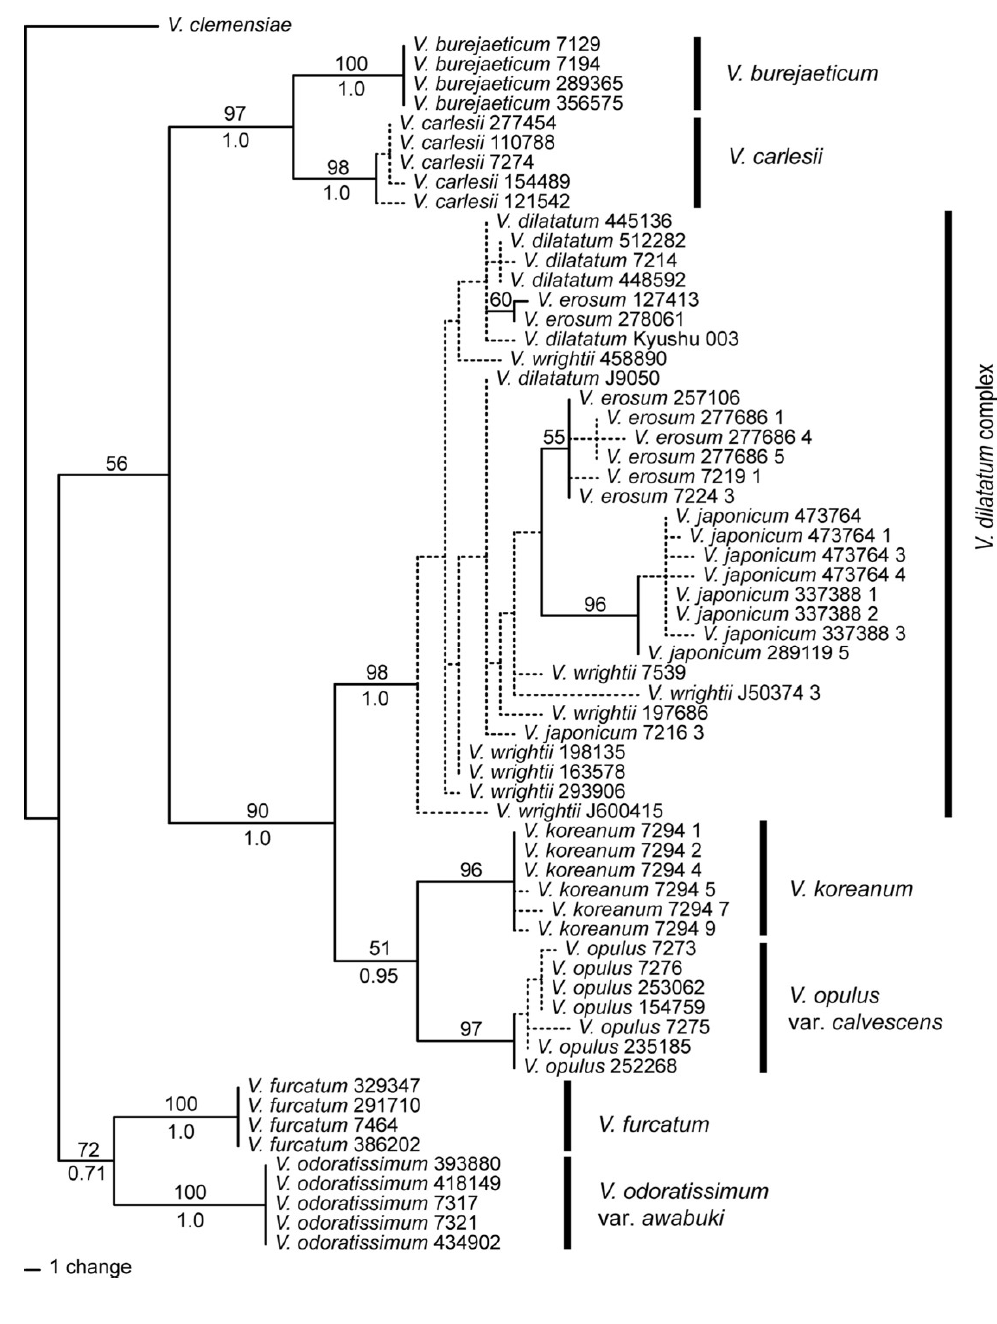 선행연구: 한국산 Viburnum 속의 ITS 염기서열 계통 분석 결과(Choi et al., 2018). 가막살나무 복합체의 계통이 불명확한 것으로 나타남